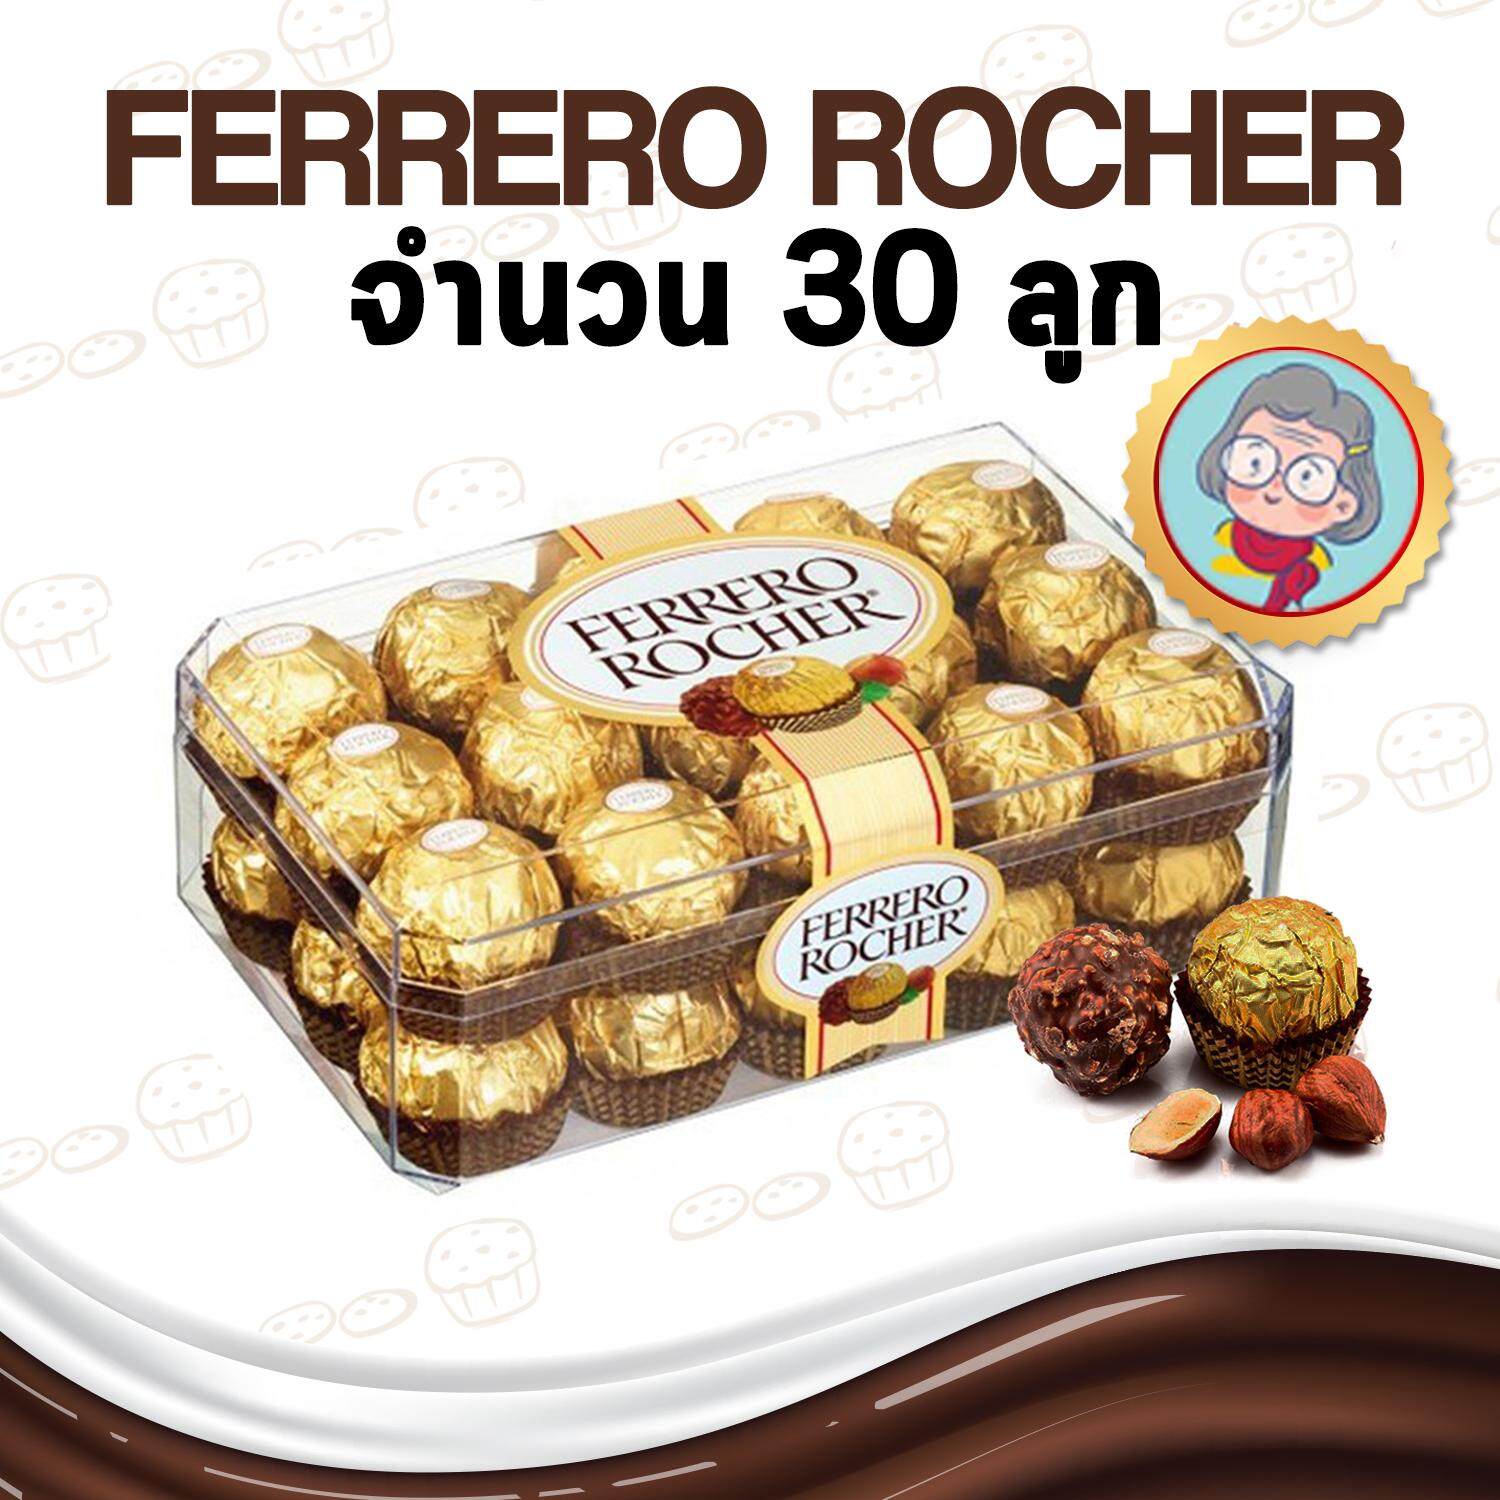 Ferrero Rocher เฟอร์เรโรรอชเชอร์ช็อกโกแลต 1 กล่อง 30 ลูก ขนมนำเข้า